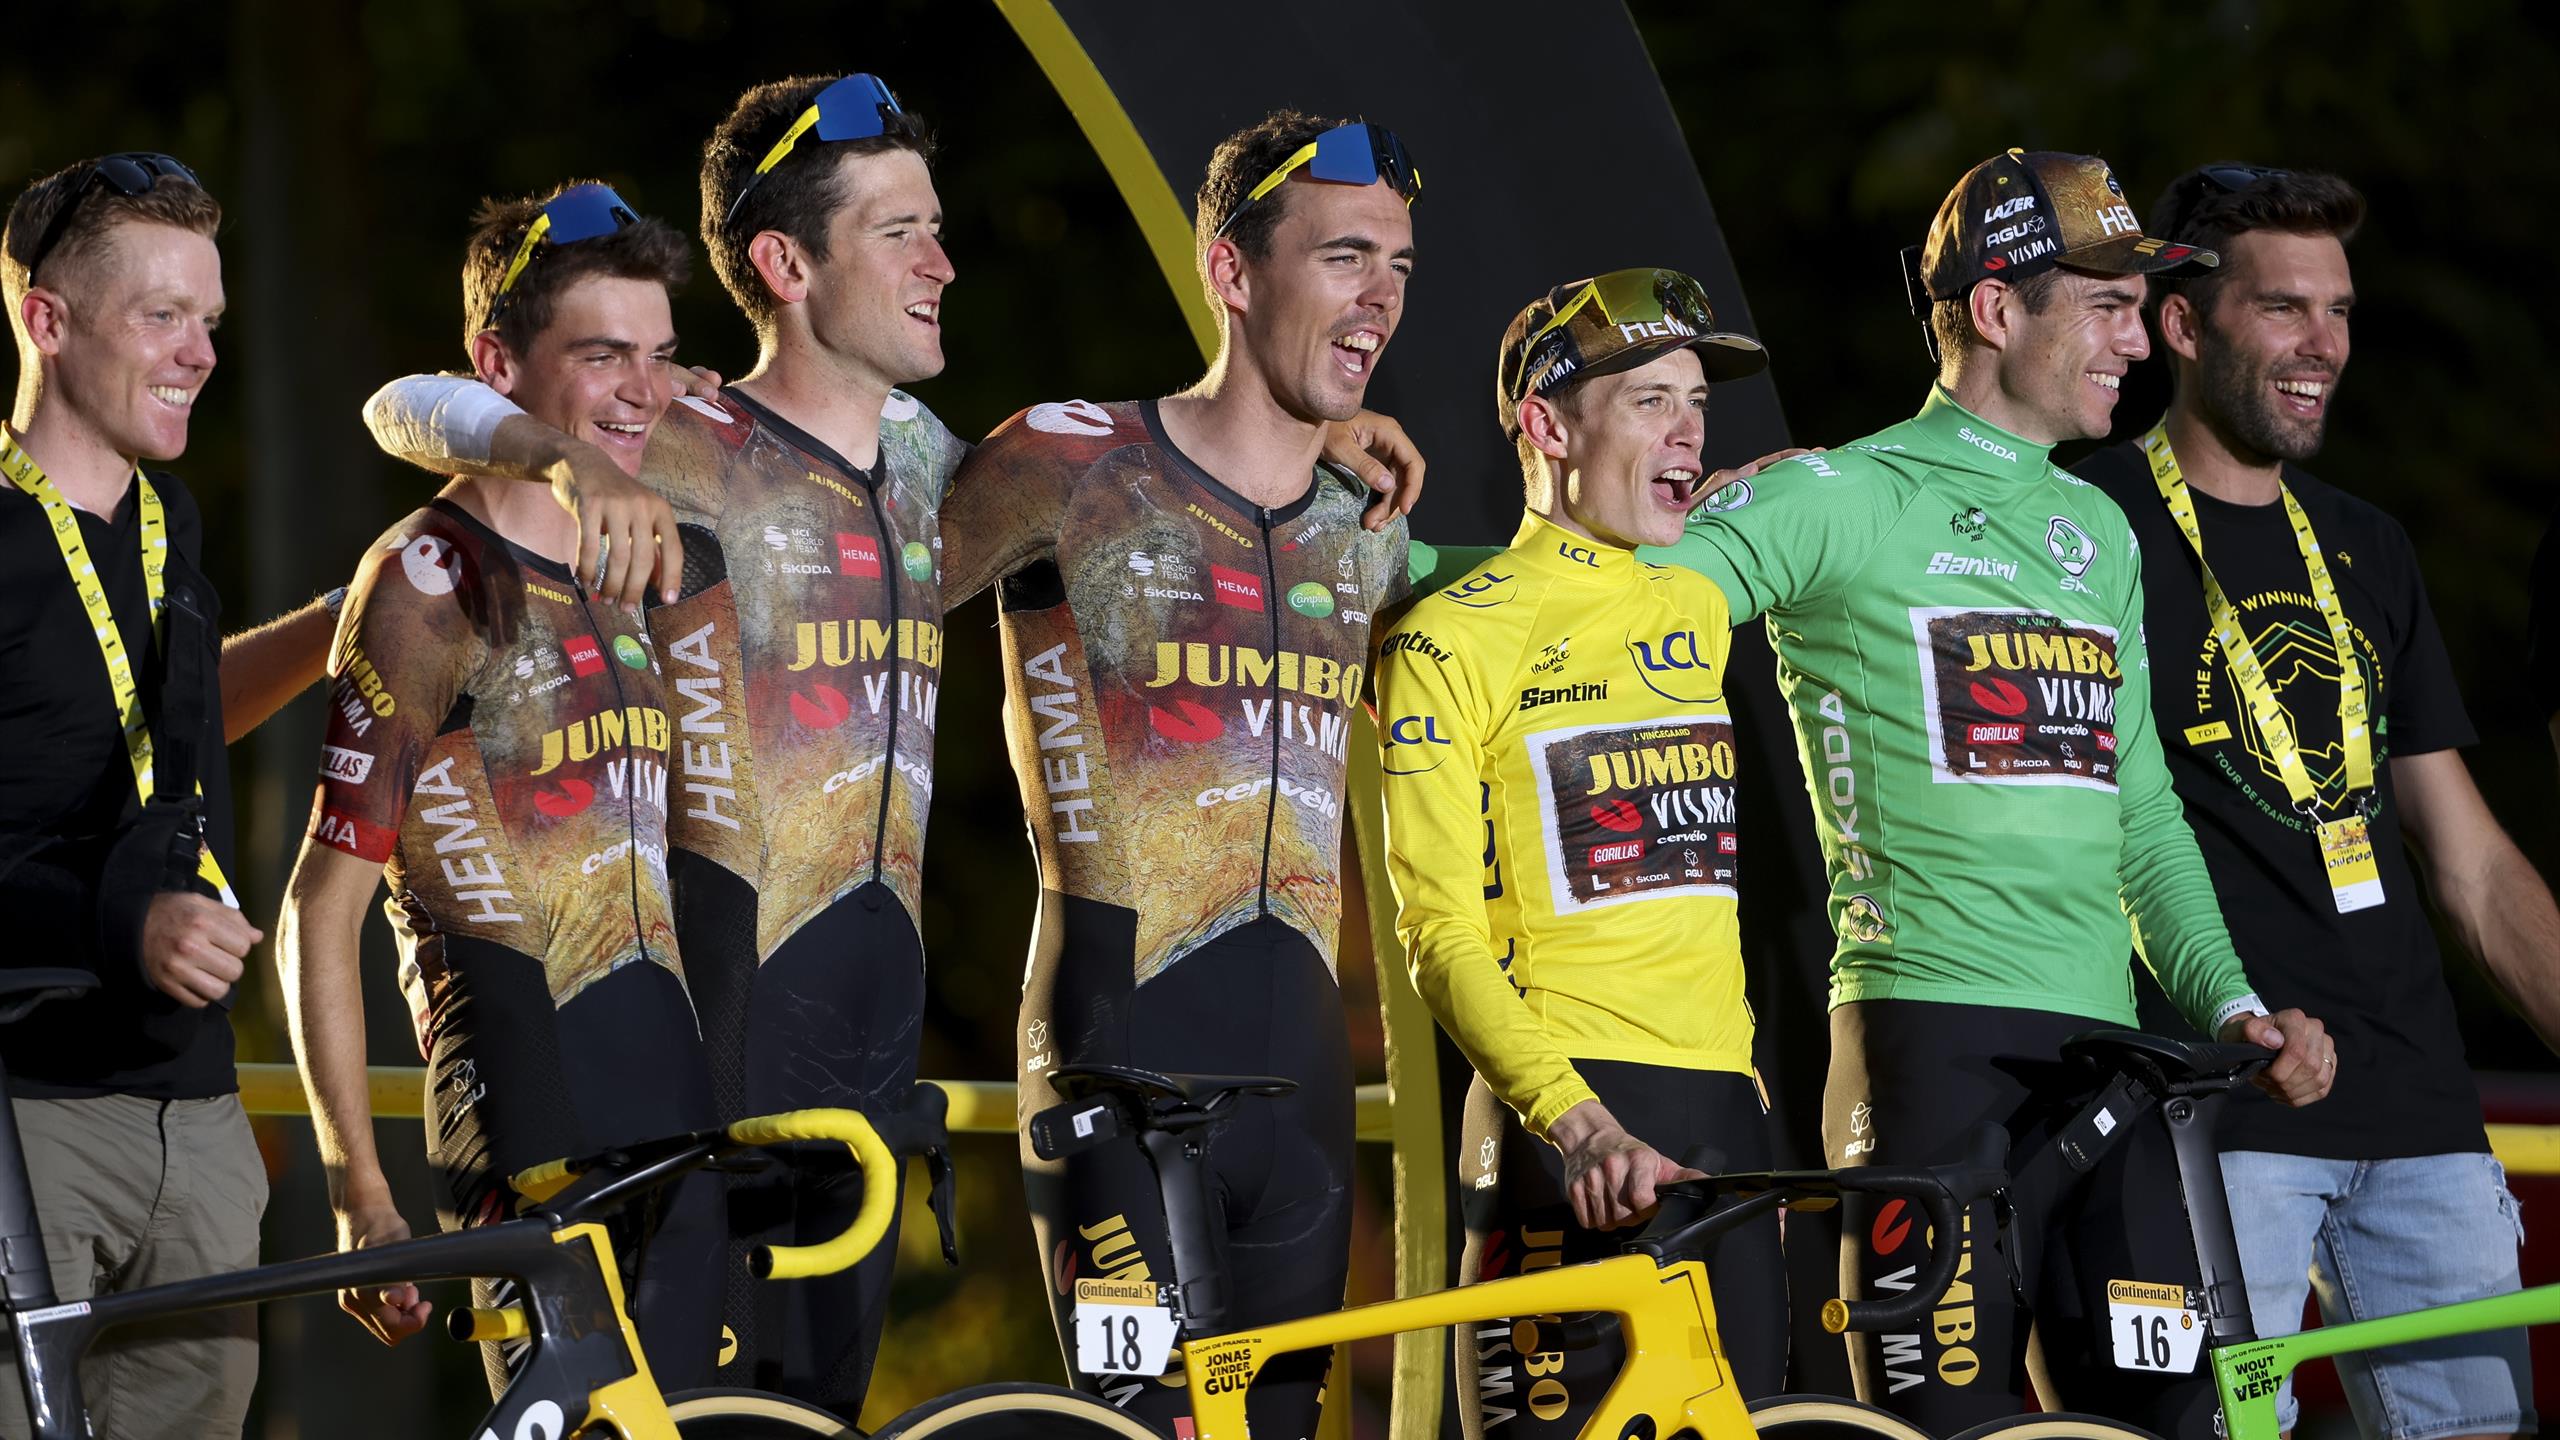 Tour de France 2023 team guide Start list, star riders for JumboVisma